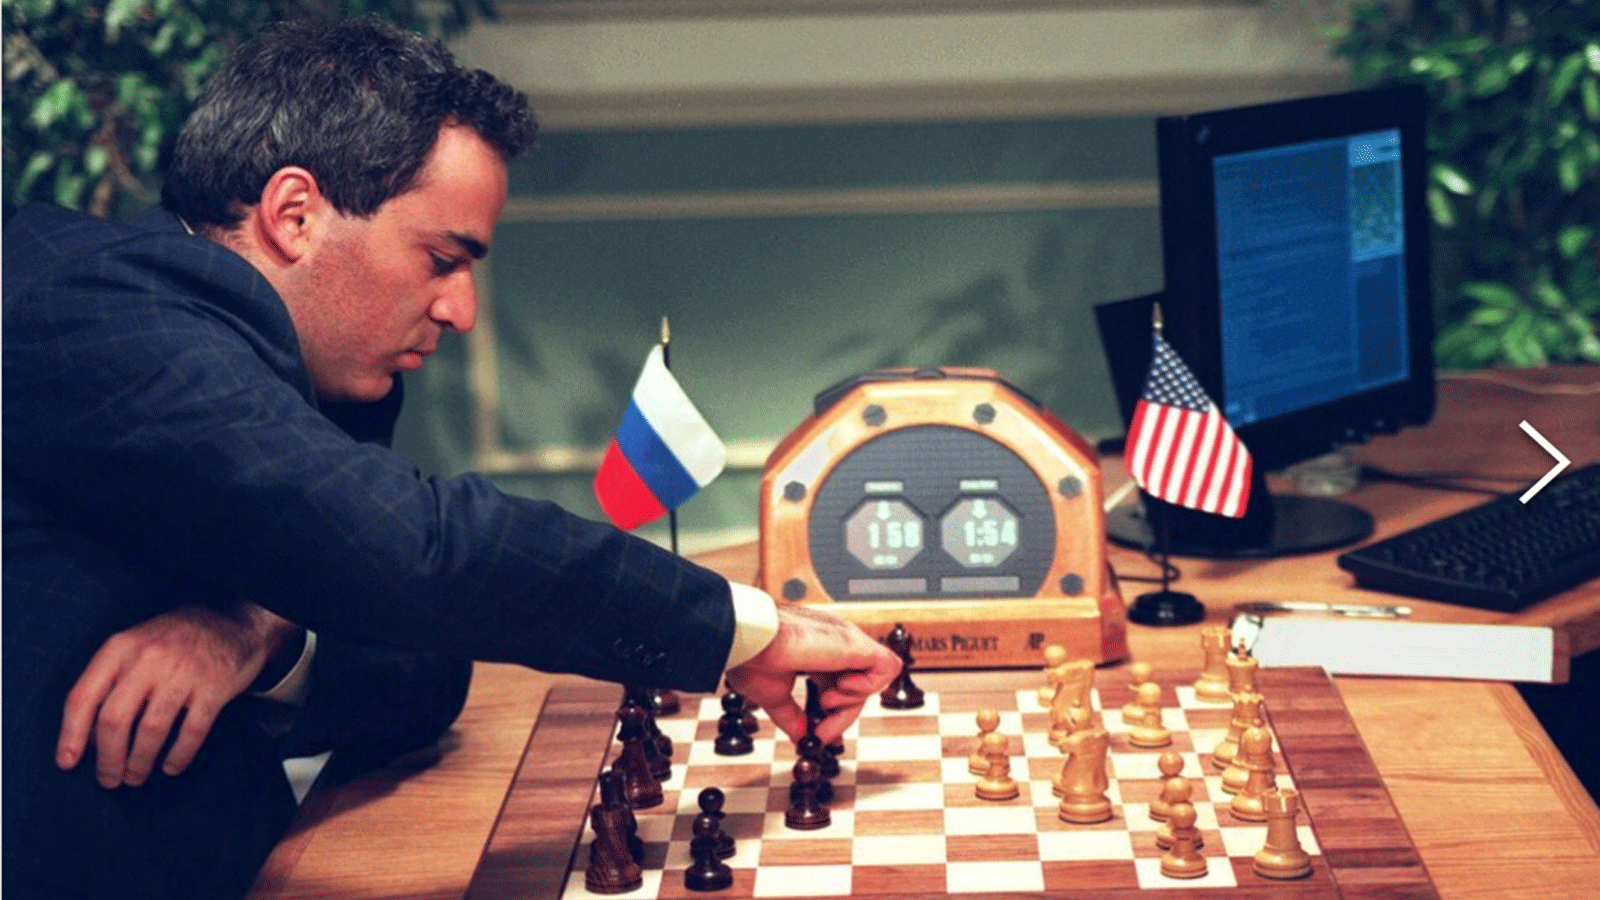 قام بطل العالم في الشطرنج غاري كاسباروف بحركة في نيويورك خلال مباراته الرابعة ضد كمبيوتر الشطرنج IBM Deep Blue في عام 1997. فاز الكمبيوتر.